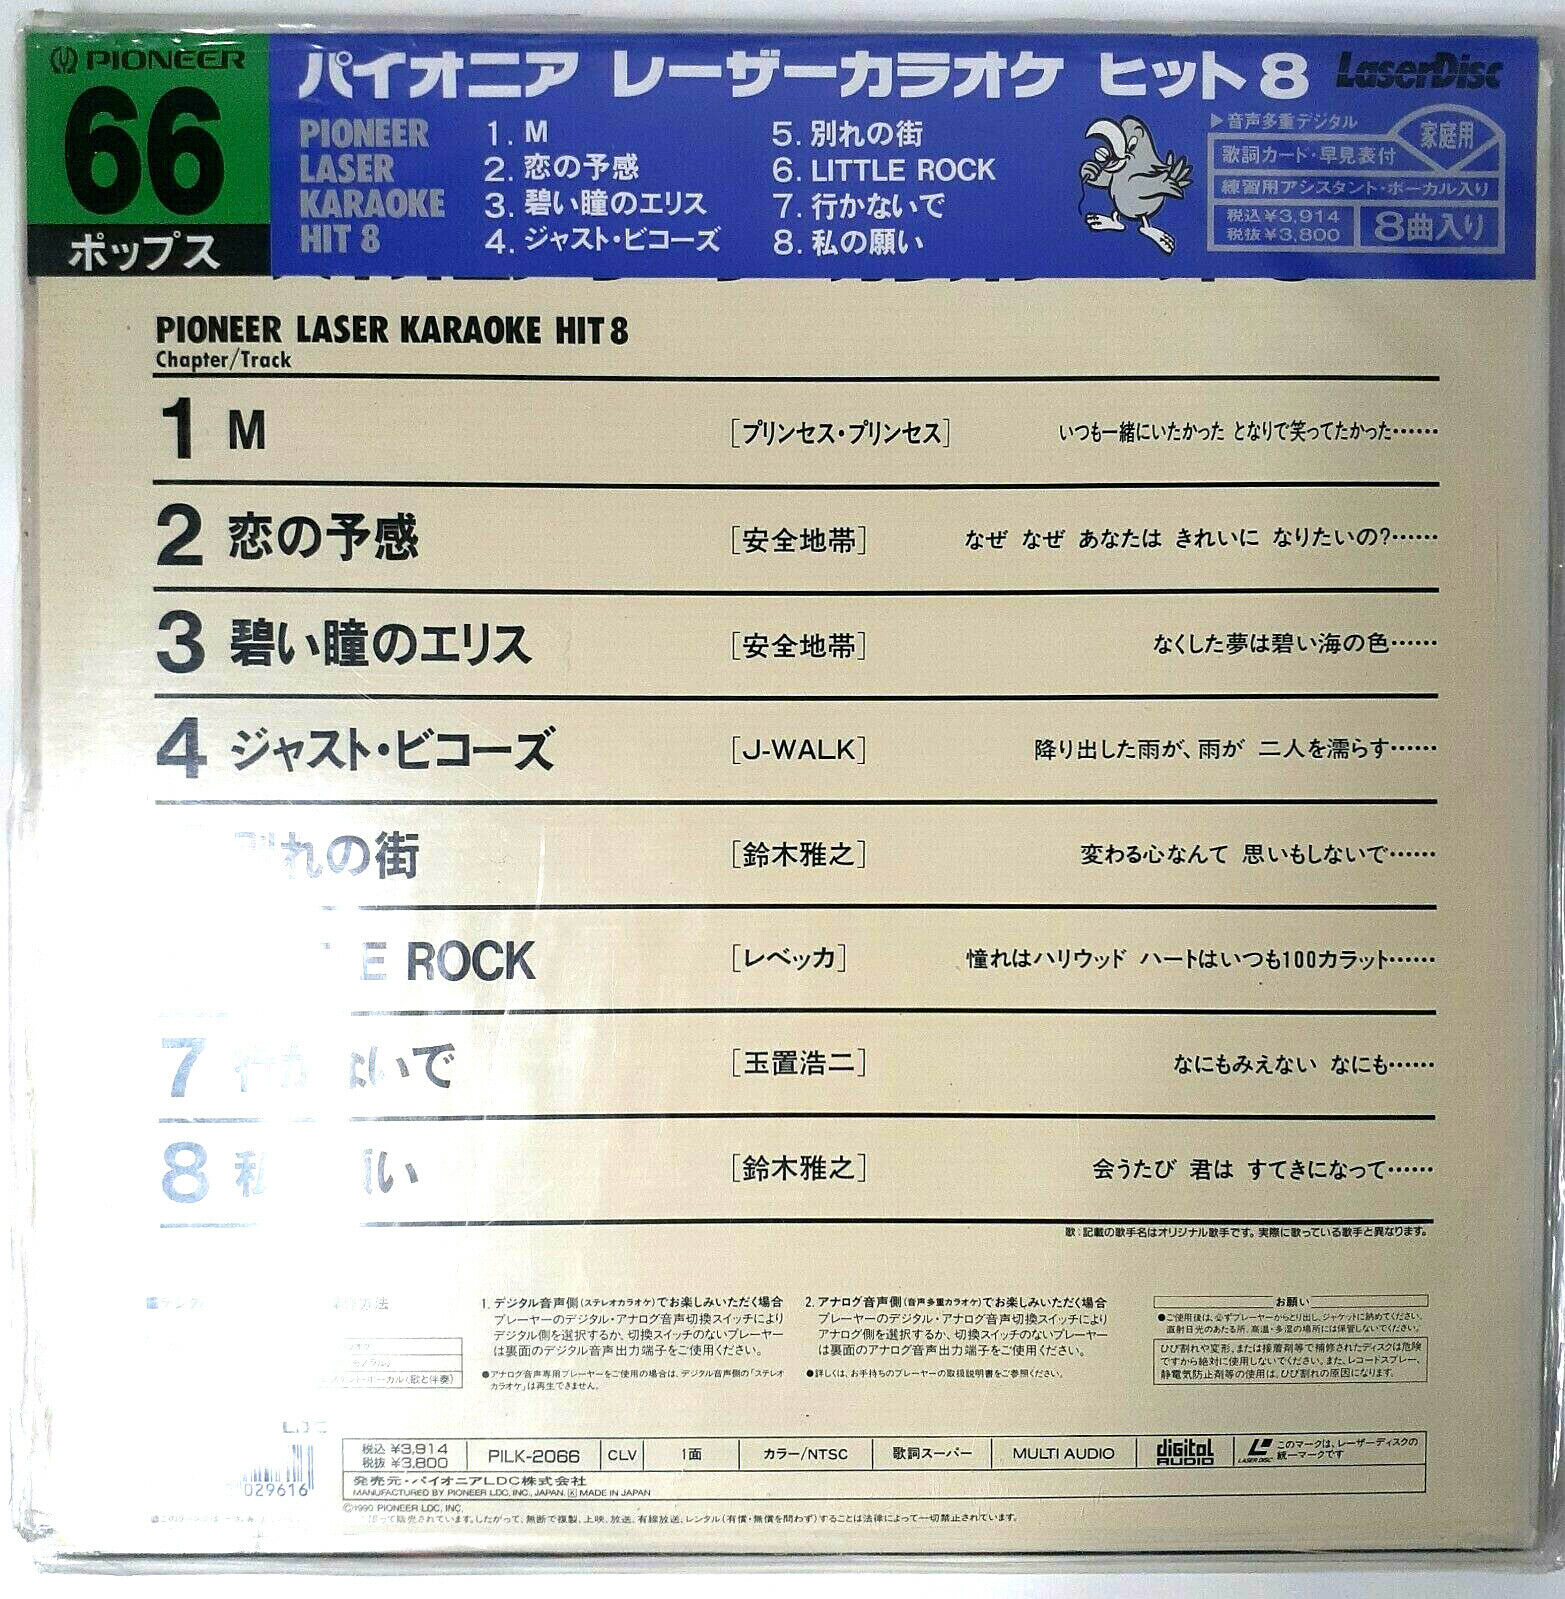 Vintage Karaoke Japanese Pioneer Laserdisc 90s 80s Hits Video Disc LOT OF 18 Pioneer Pioneer - фотография #6